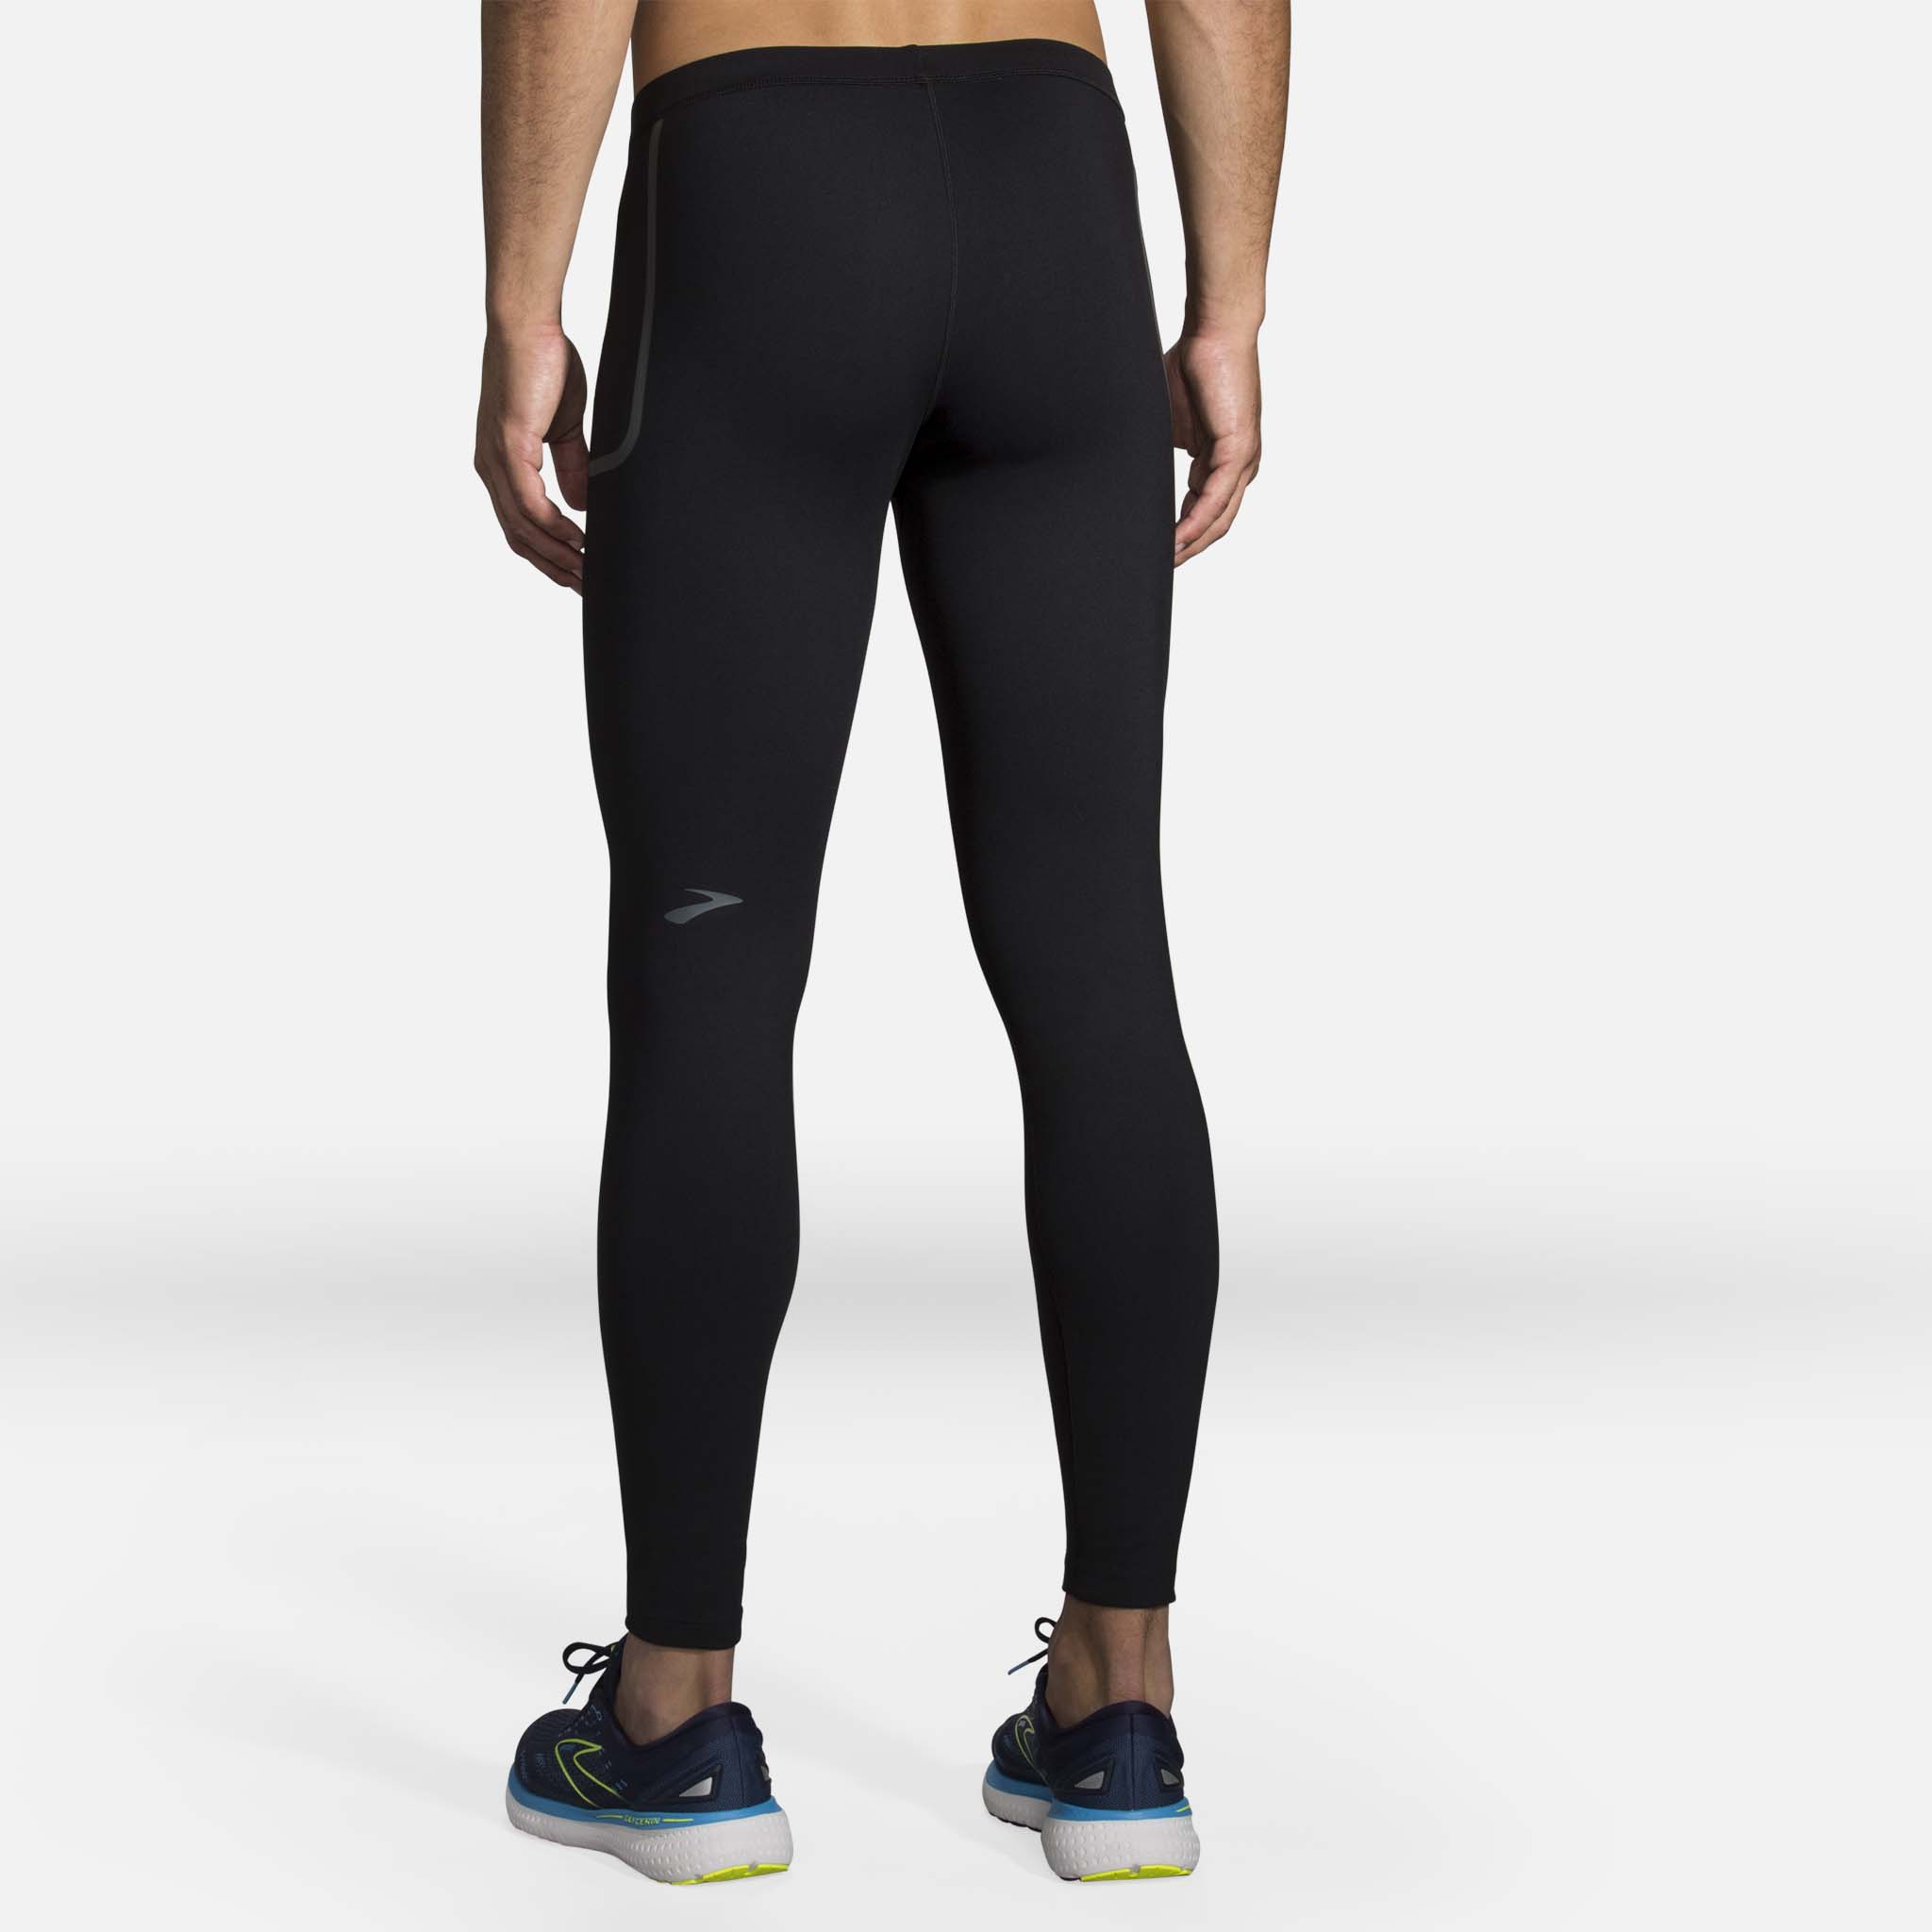 Brooks Momentum Thermal running leggings for men – Soccer Sport Fitness